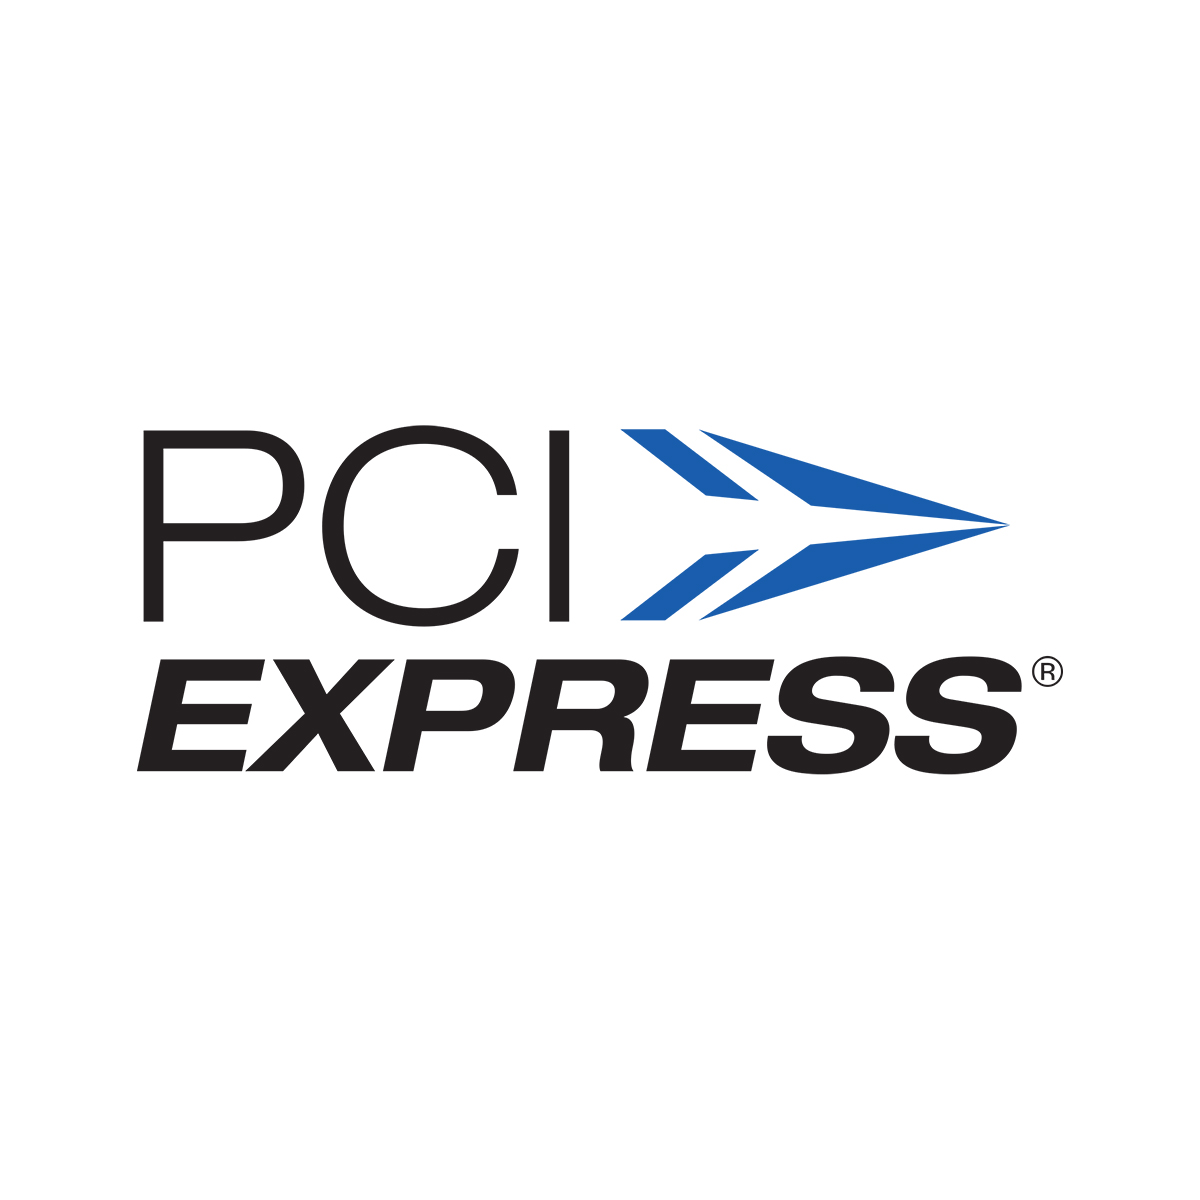 Express. PCI логотип. Экспресс лого. PCI Express 4.0 логотип.